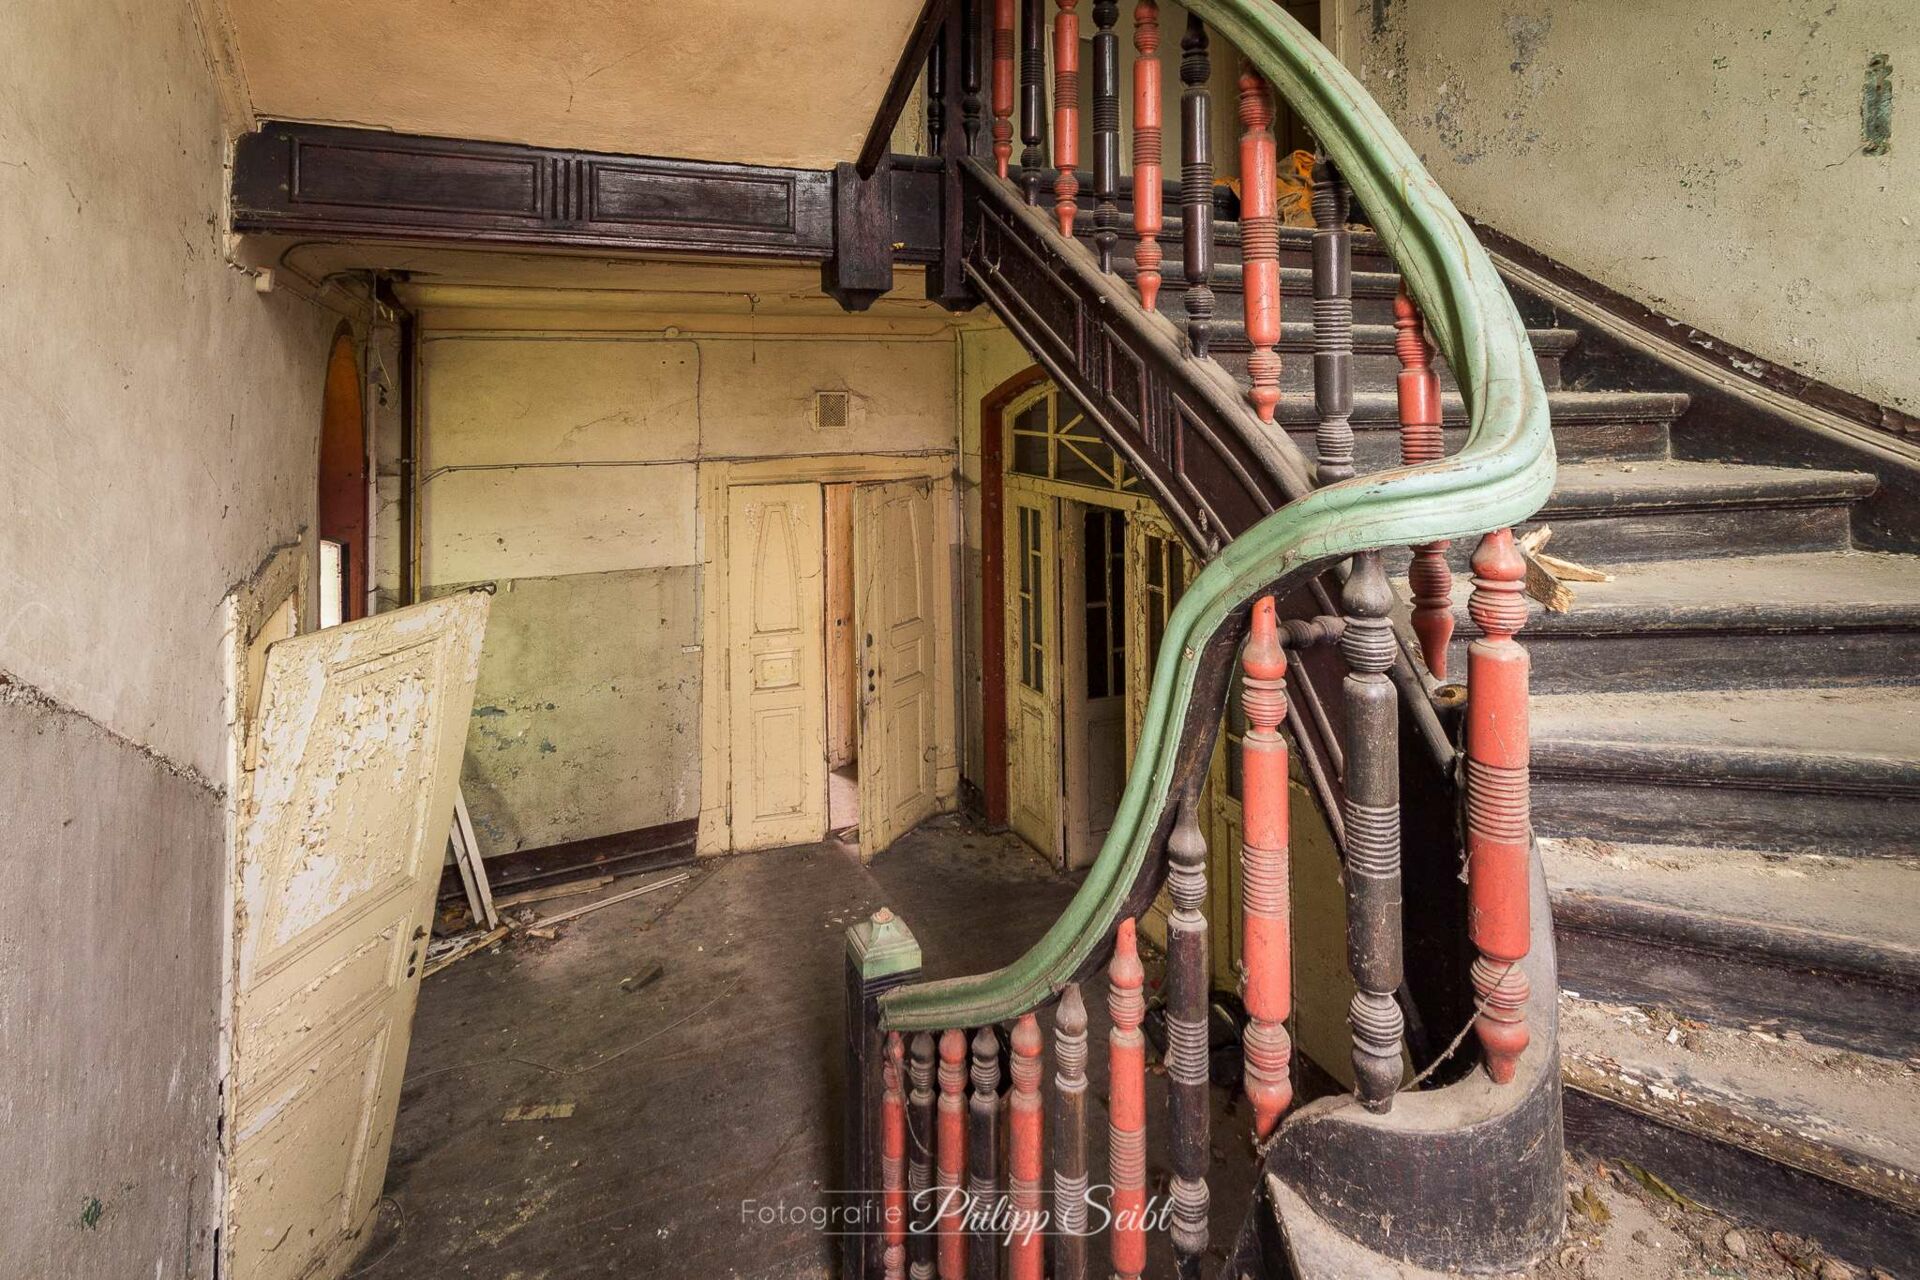 Buntes Treppenhaus in einer verlassenen Villa